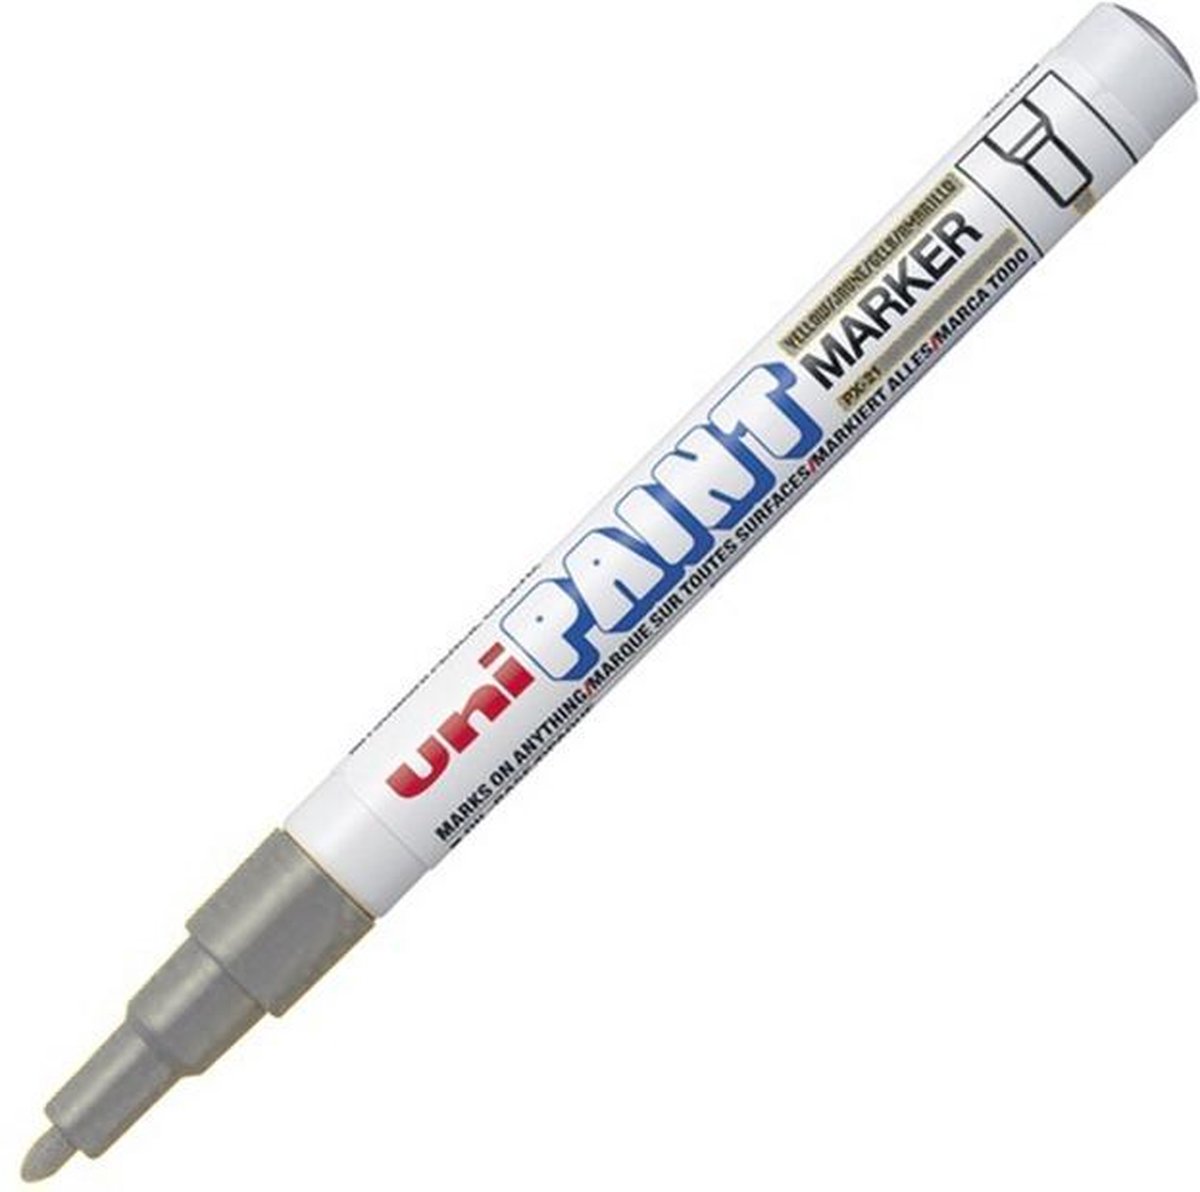 Uni Paint PX-21 Paint Marker - Grijze verfstift met 0.8 – 1.2 mm punt